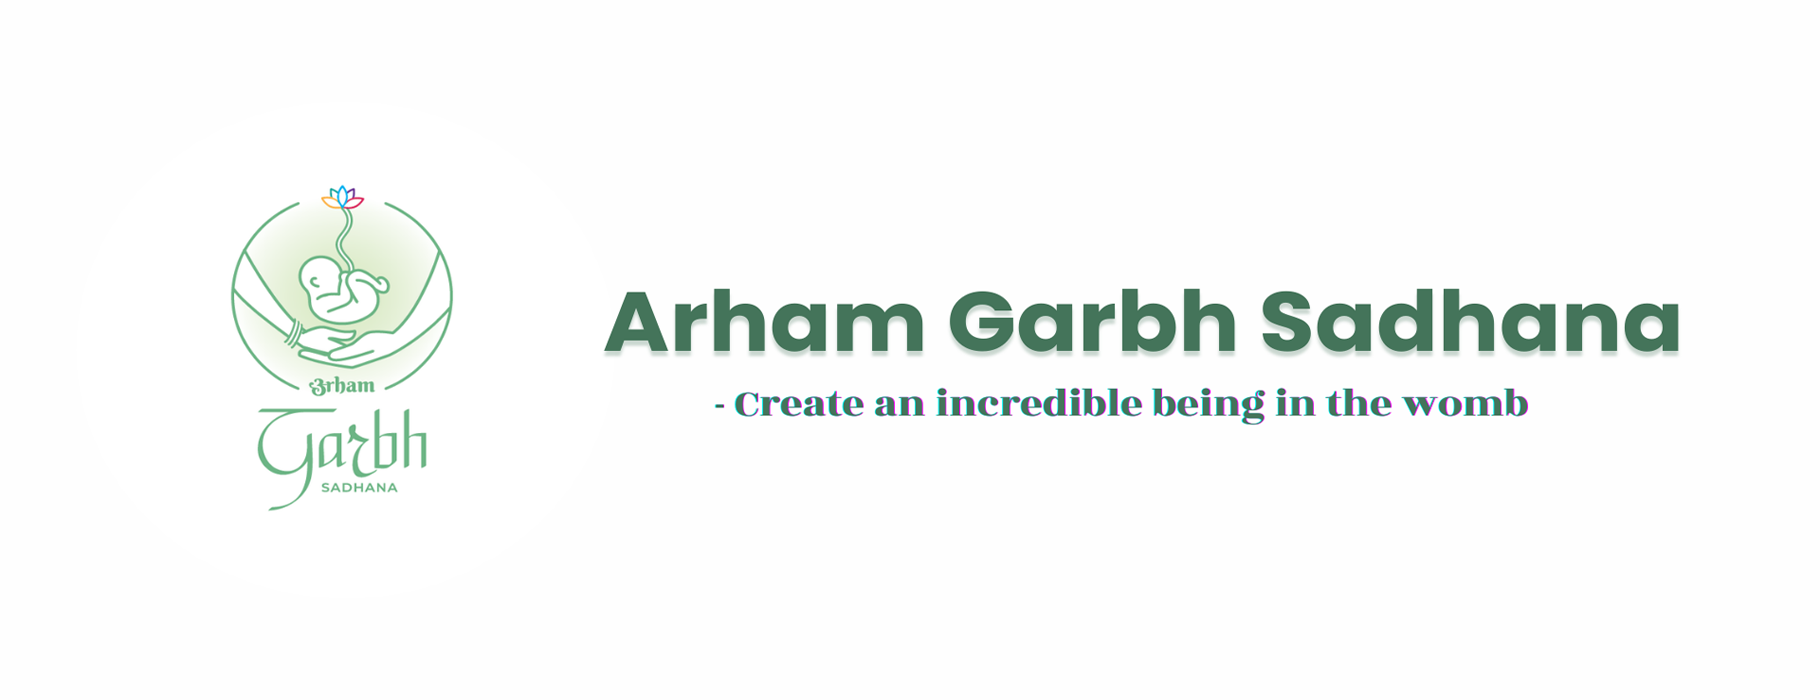 Arham Garbh Sadhana